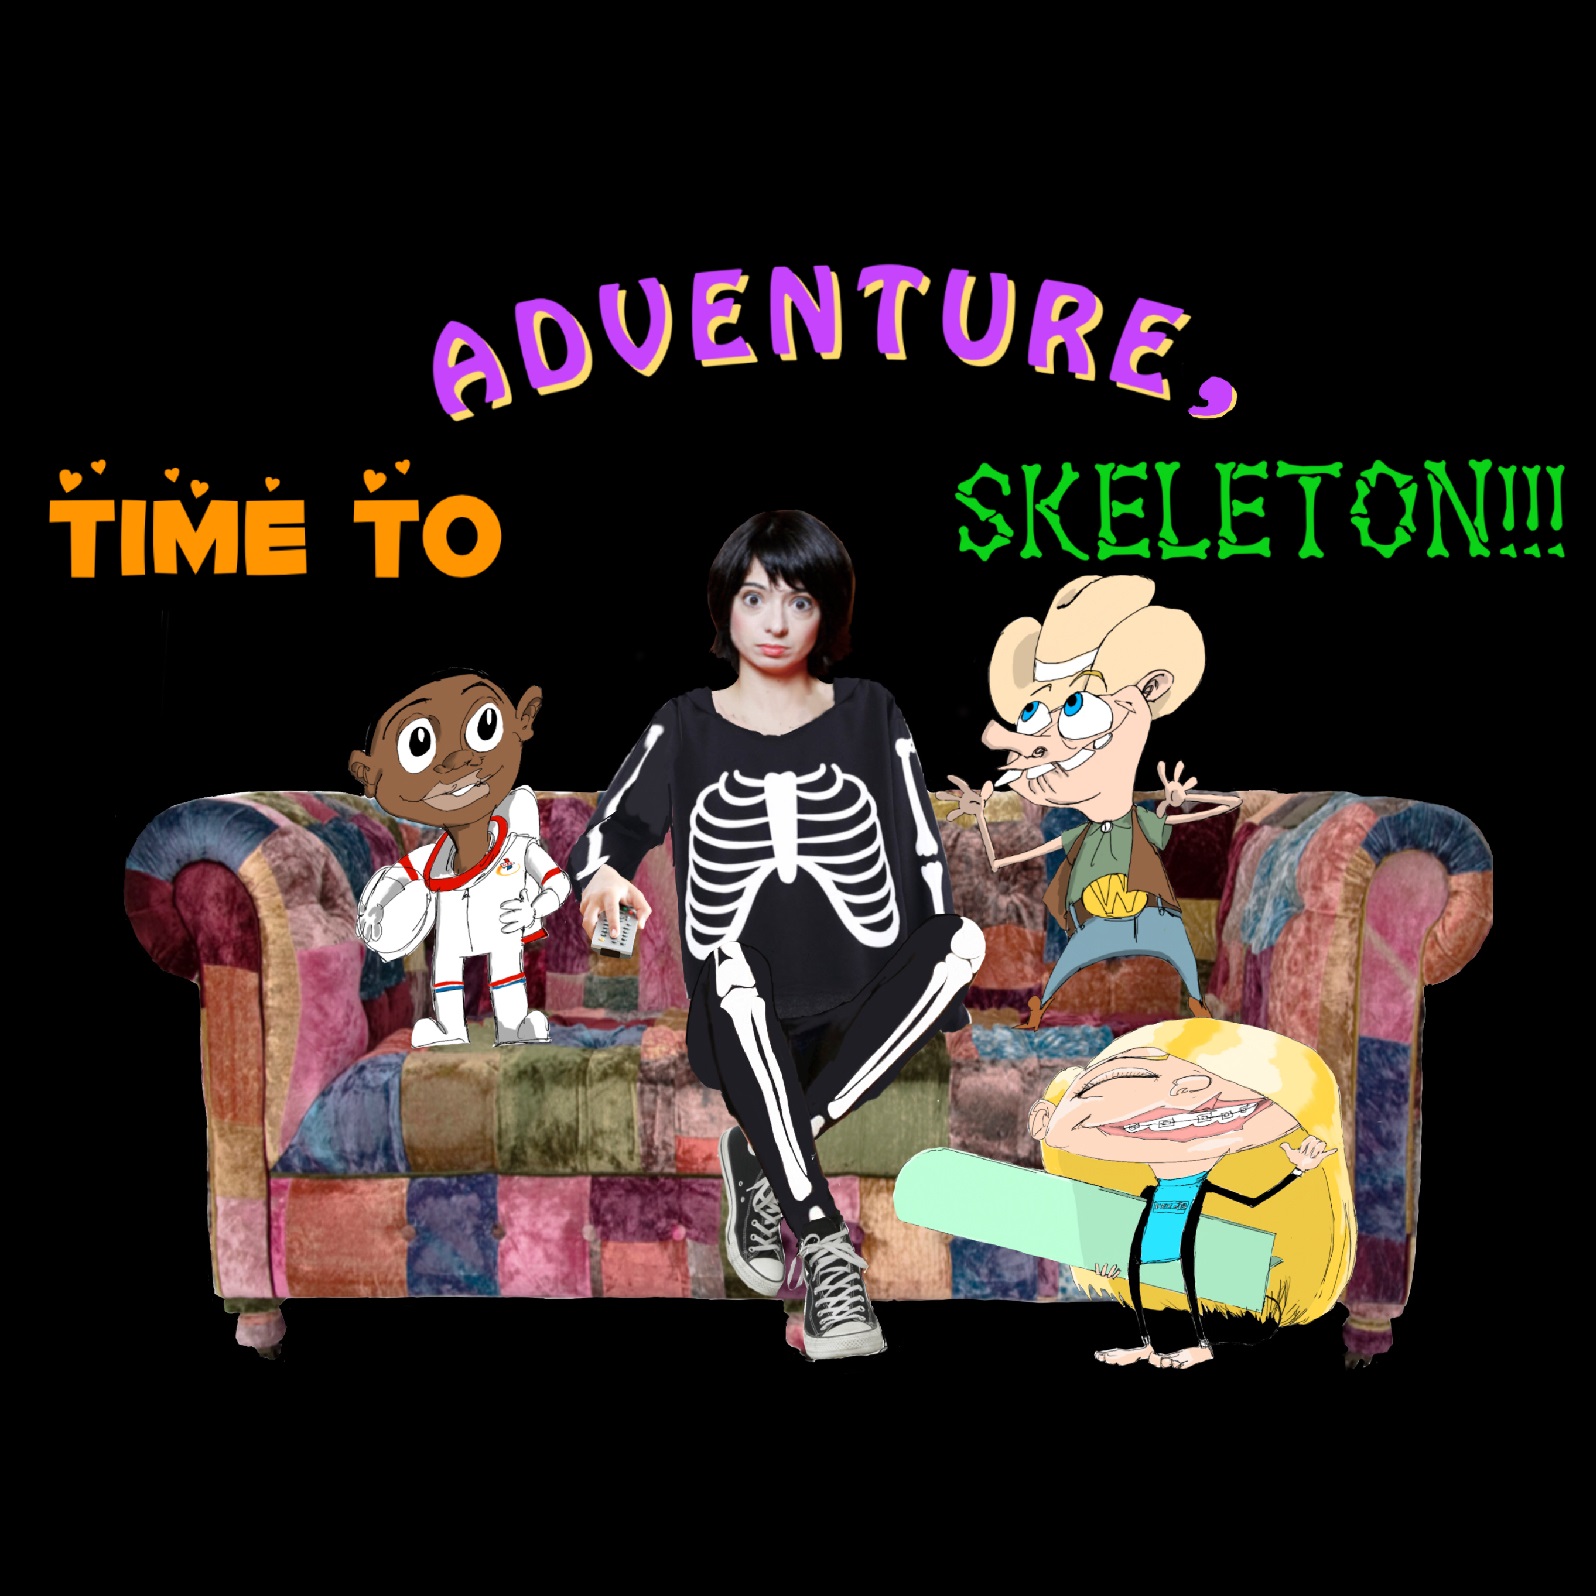 (Micro) Episode 38 - Time to Adventure, Skeleton! feat. Justin Arawjo